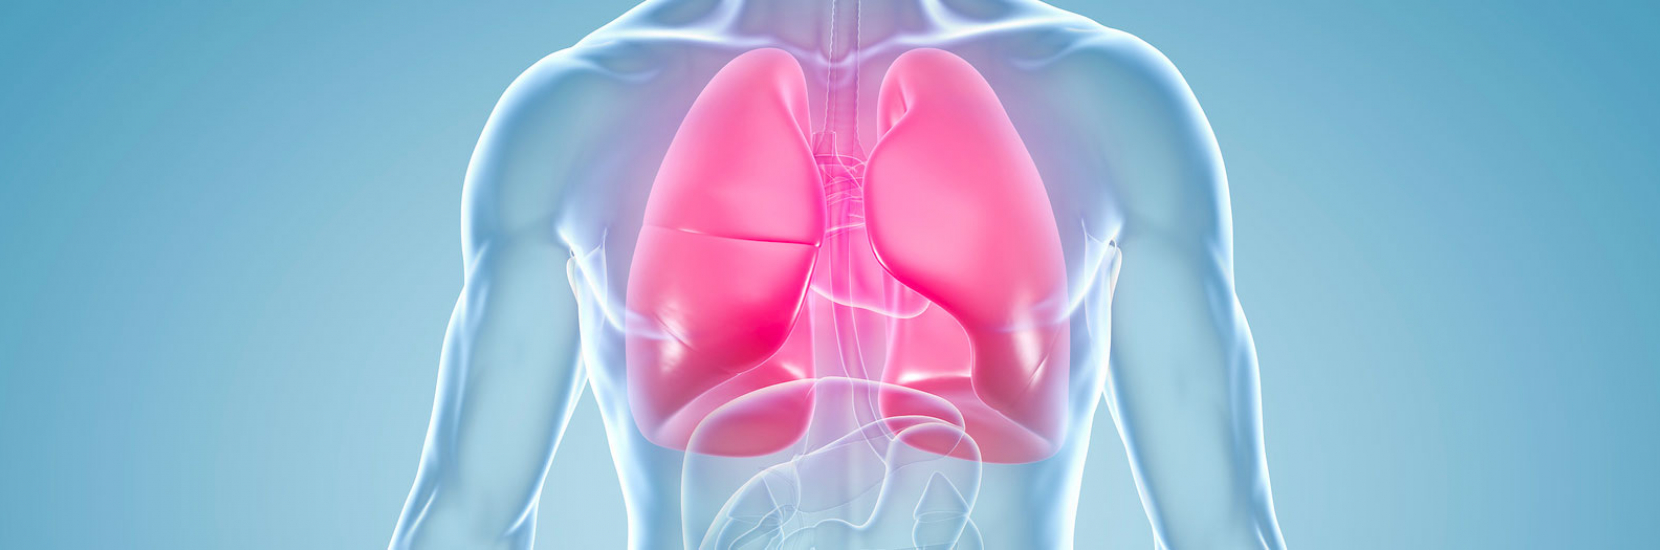 L'embolie pulmonaire